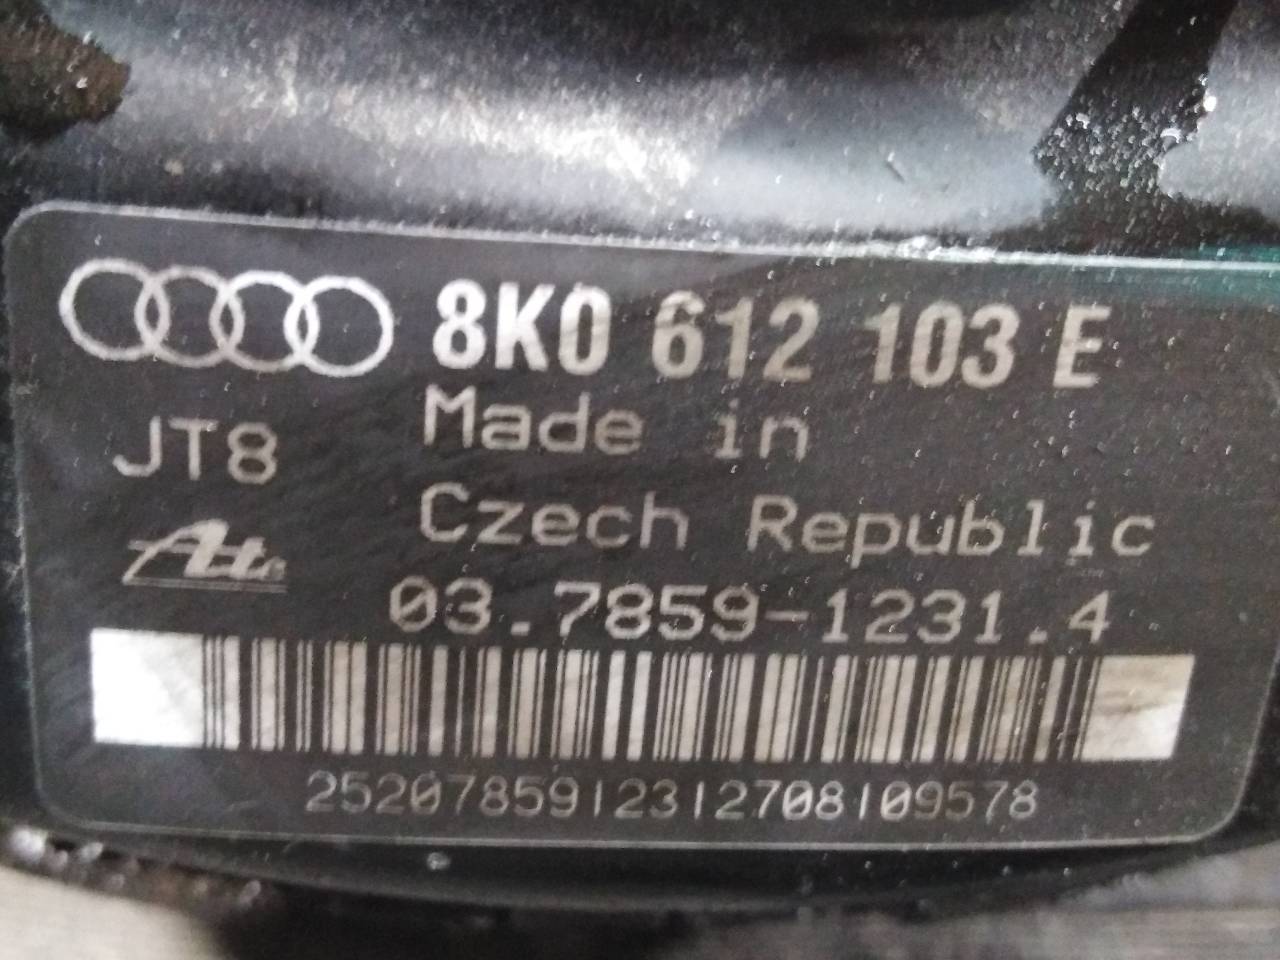 AUDI A4 B8/8K (2011-2016) Brake Servo Booster 8K0612103E, P3-B9-24-3 24485982